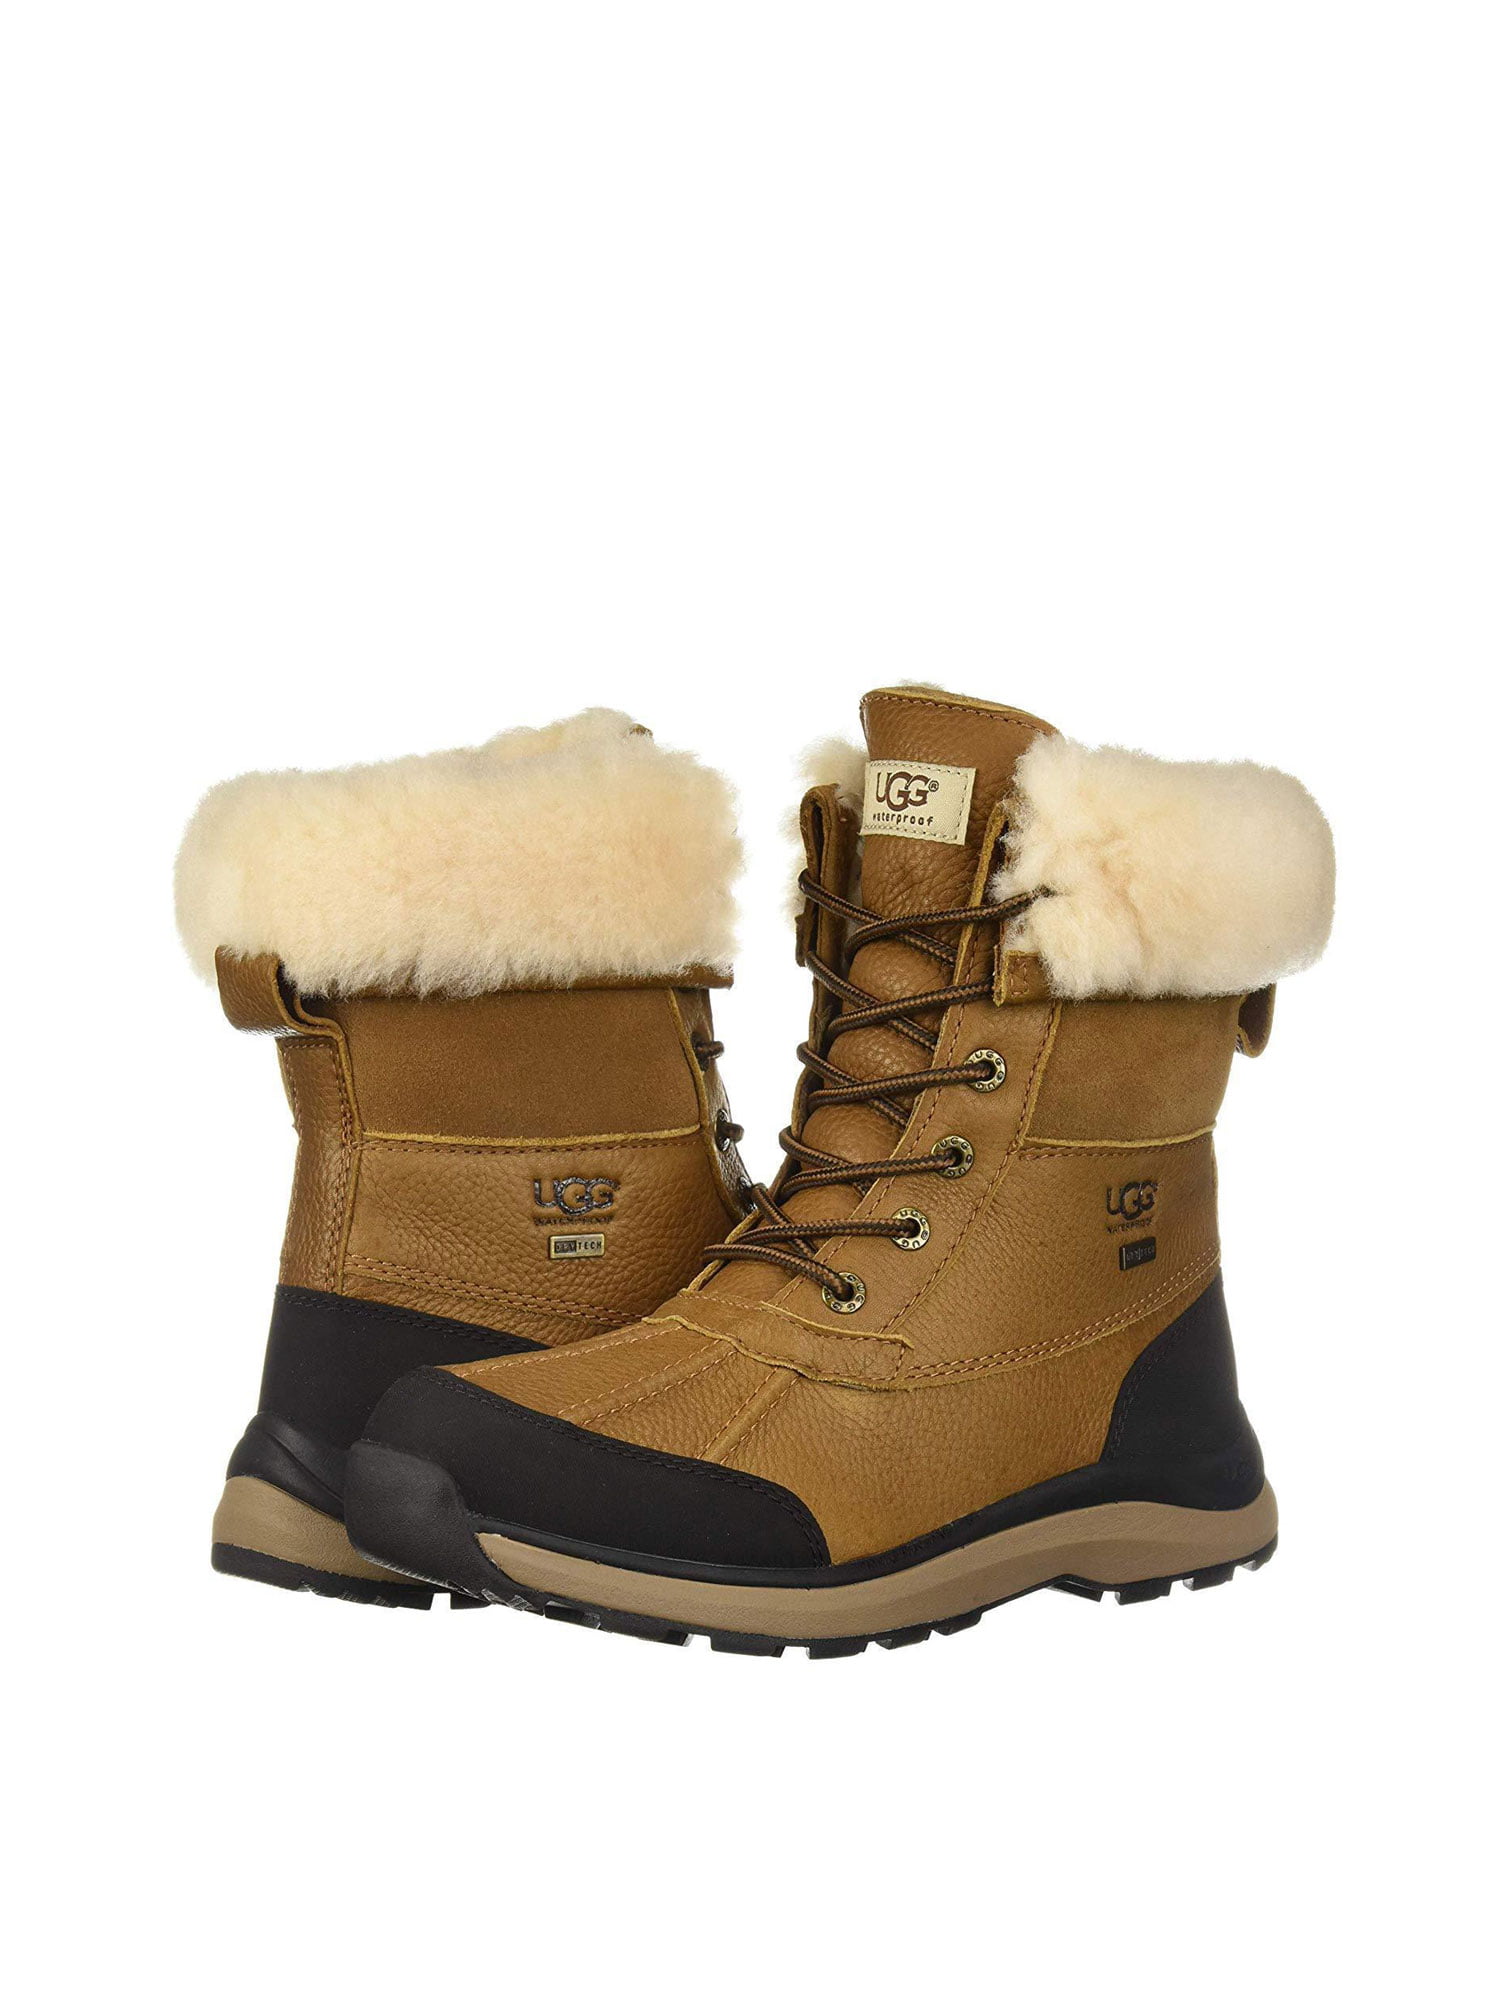 ugg adirondack iii winter boot